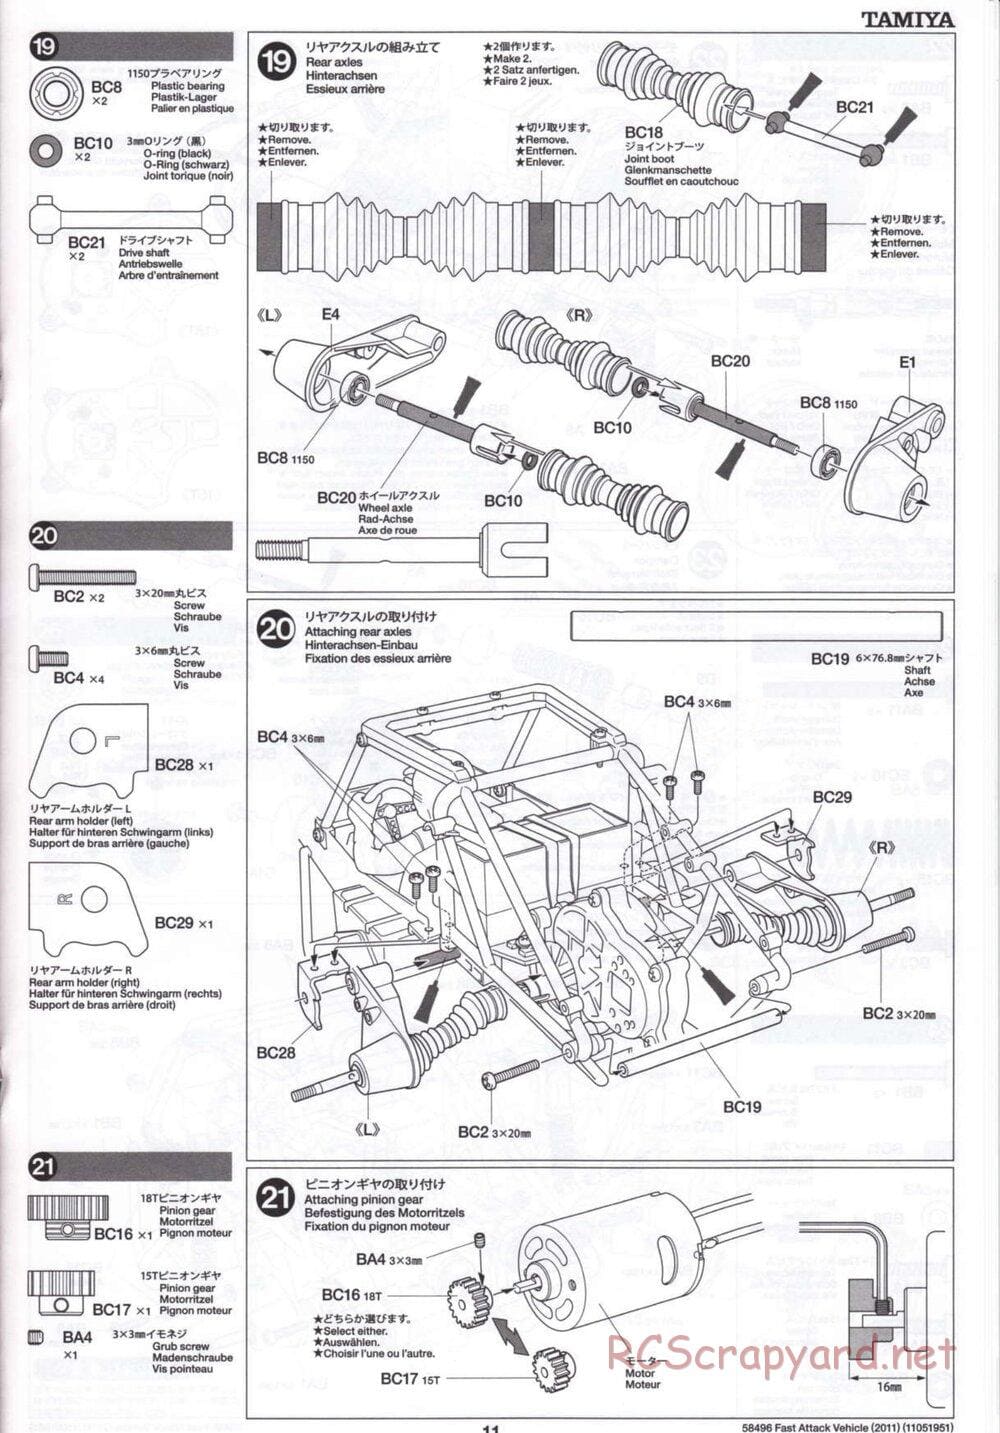 Tamiya - Fast Attack Vehicle 2011 - FAV Chassis - Manual - Page 11